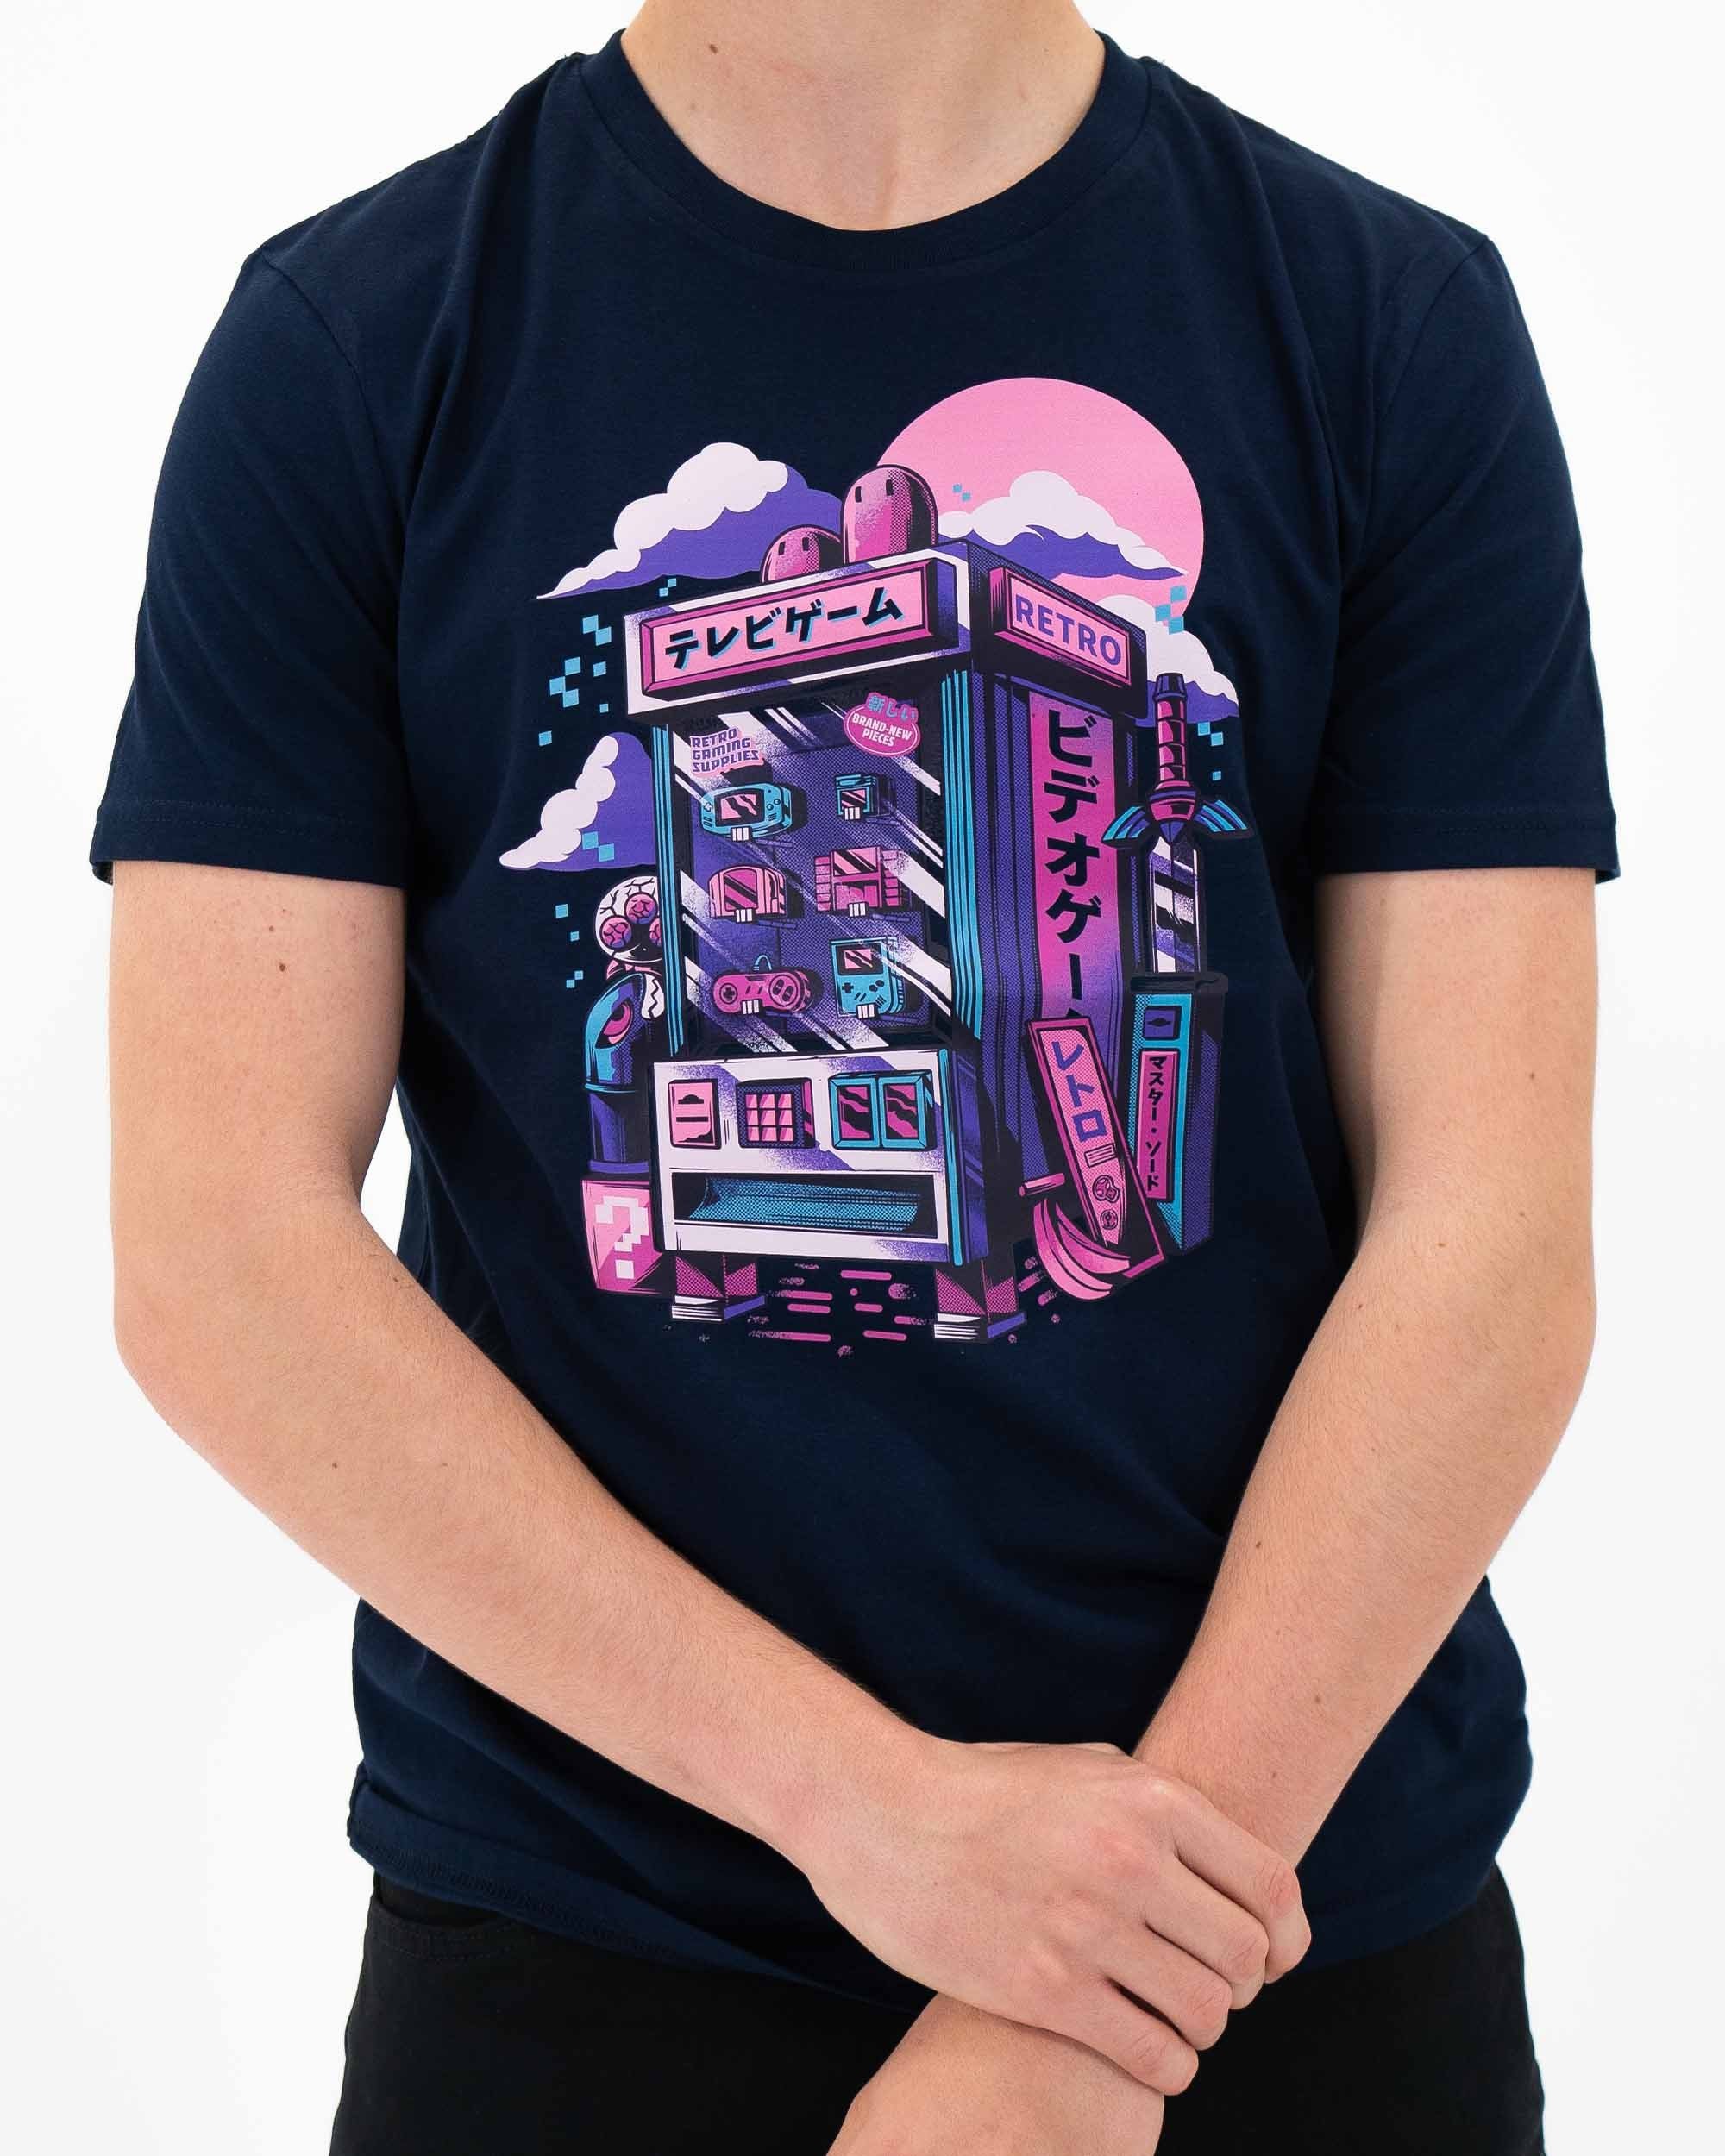 T-shirt Retro Vending Machine de couleur Navy par Ilustrata